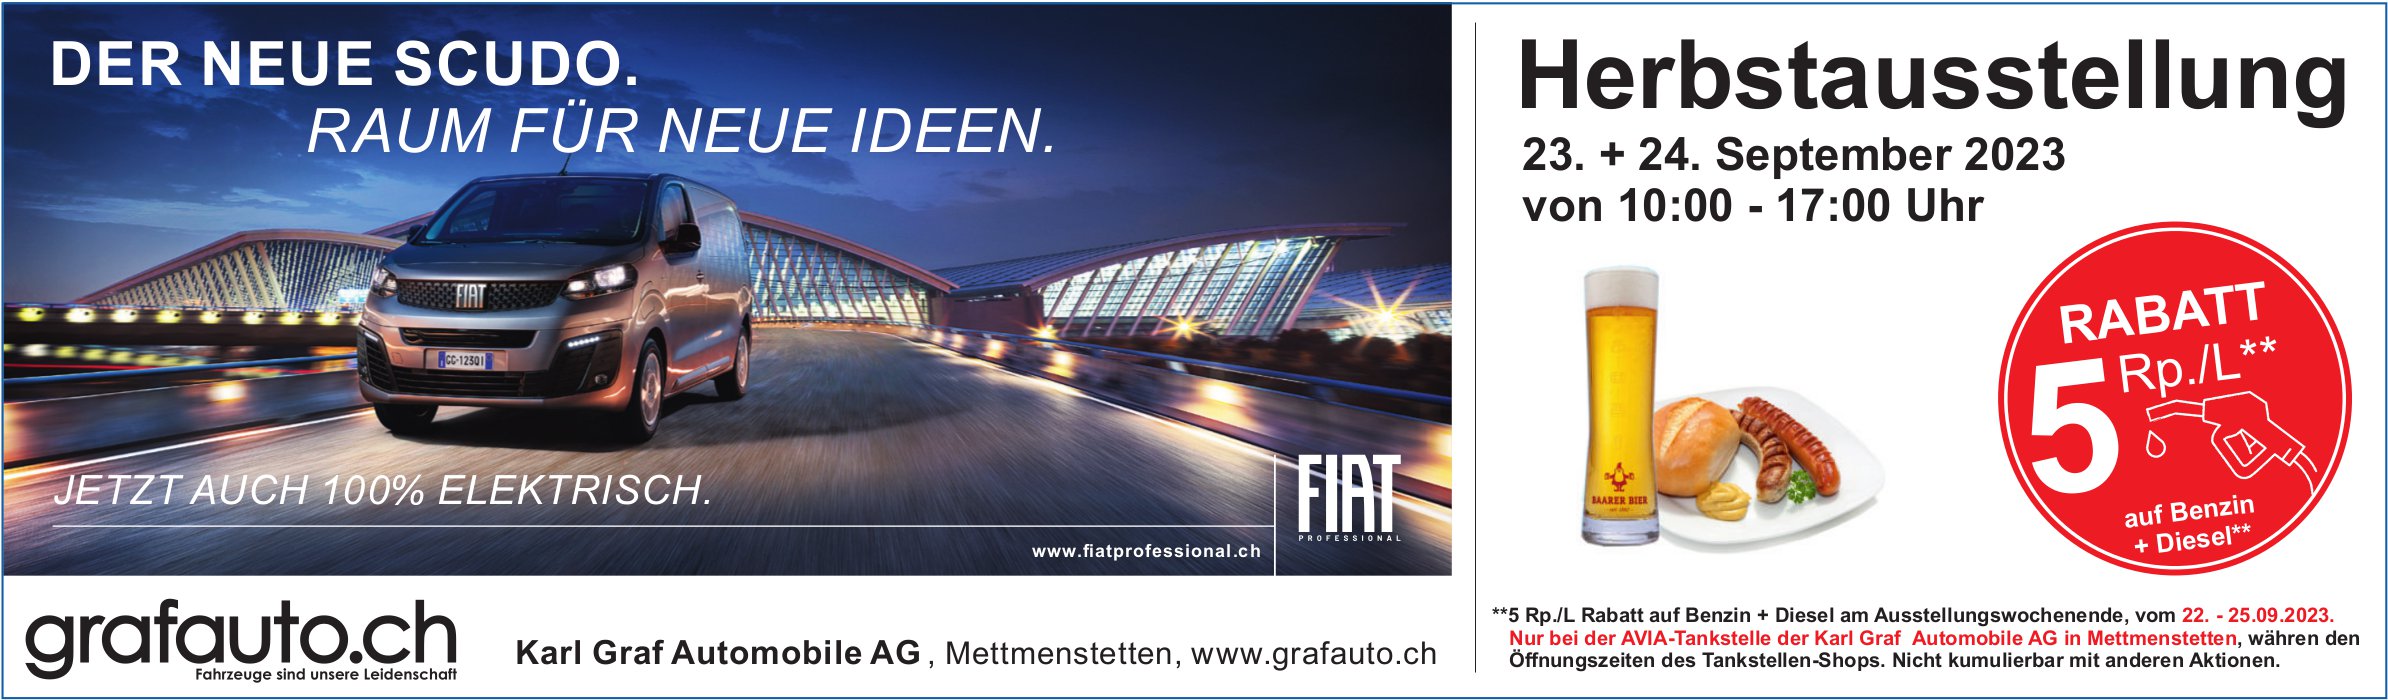 Karl Graf Automobile AG, Mettmenstetten - Herbstausstellung, 23. und 24. September